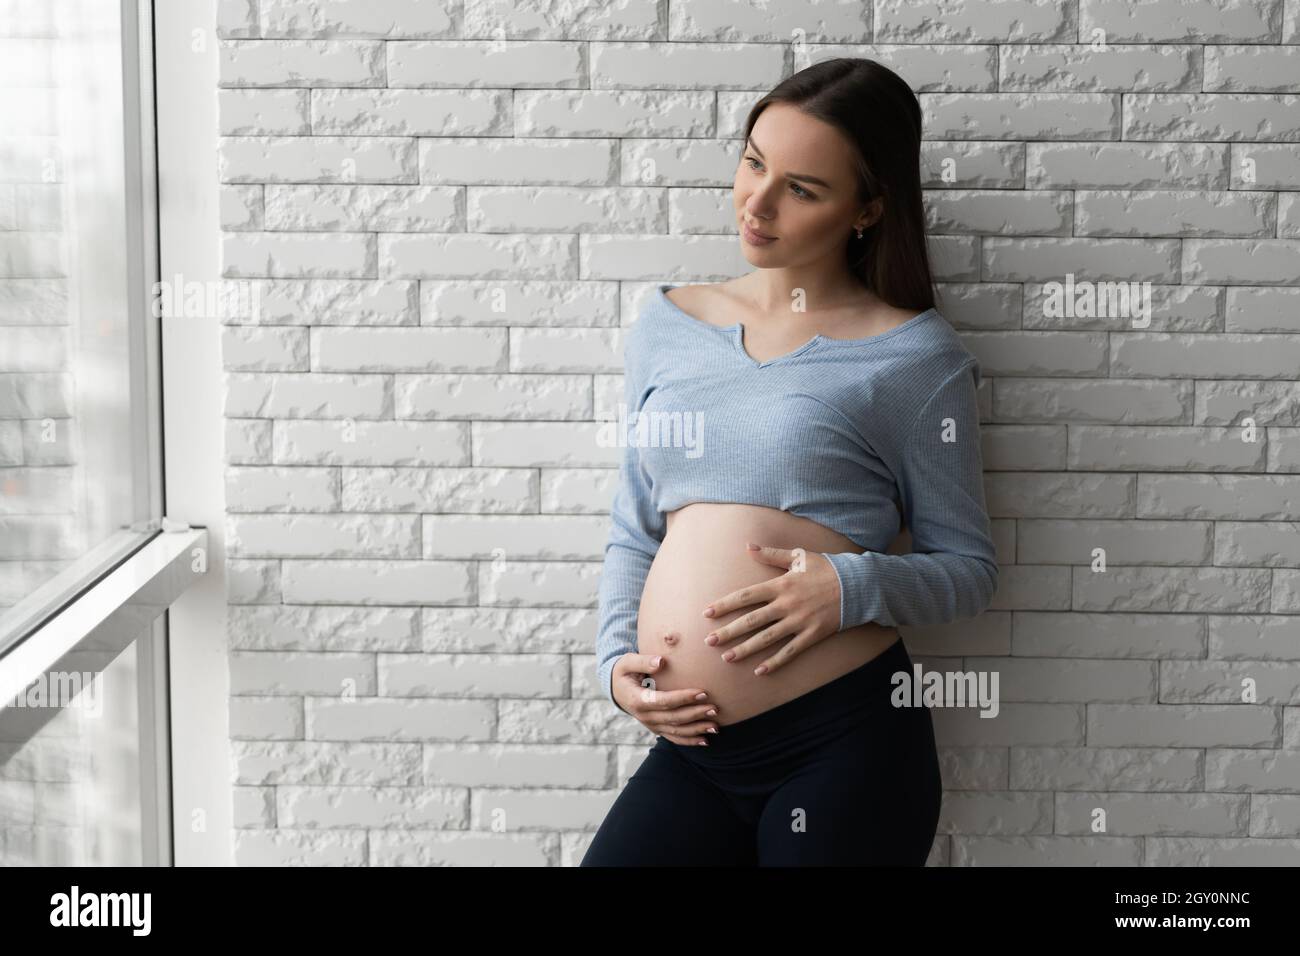 Portrait d'une jeune femme enceinte.Se tient contre un mur de briques et regarde la fenêtre. Banque D'Images